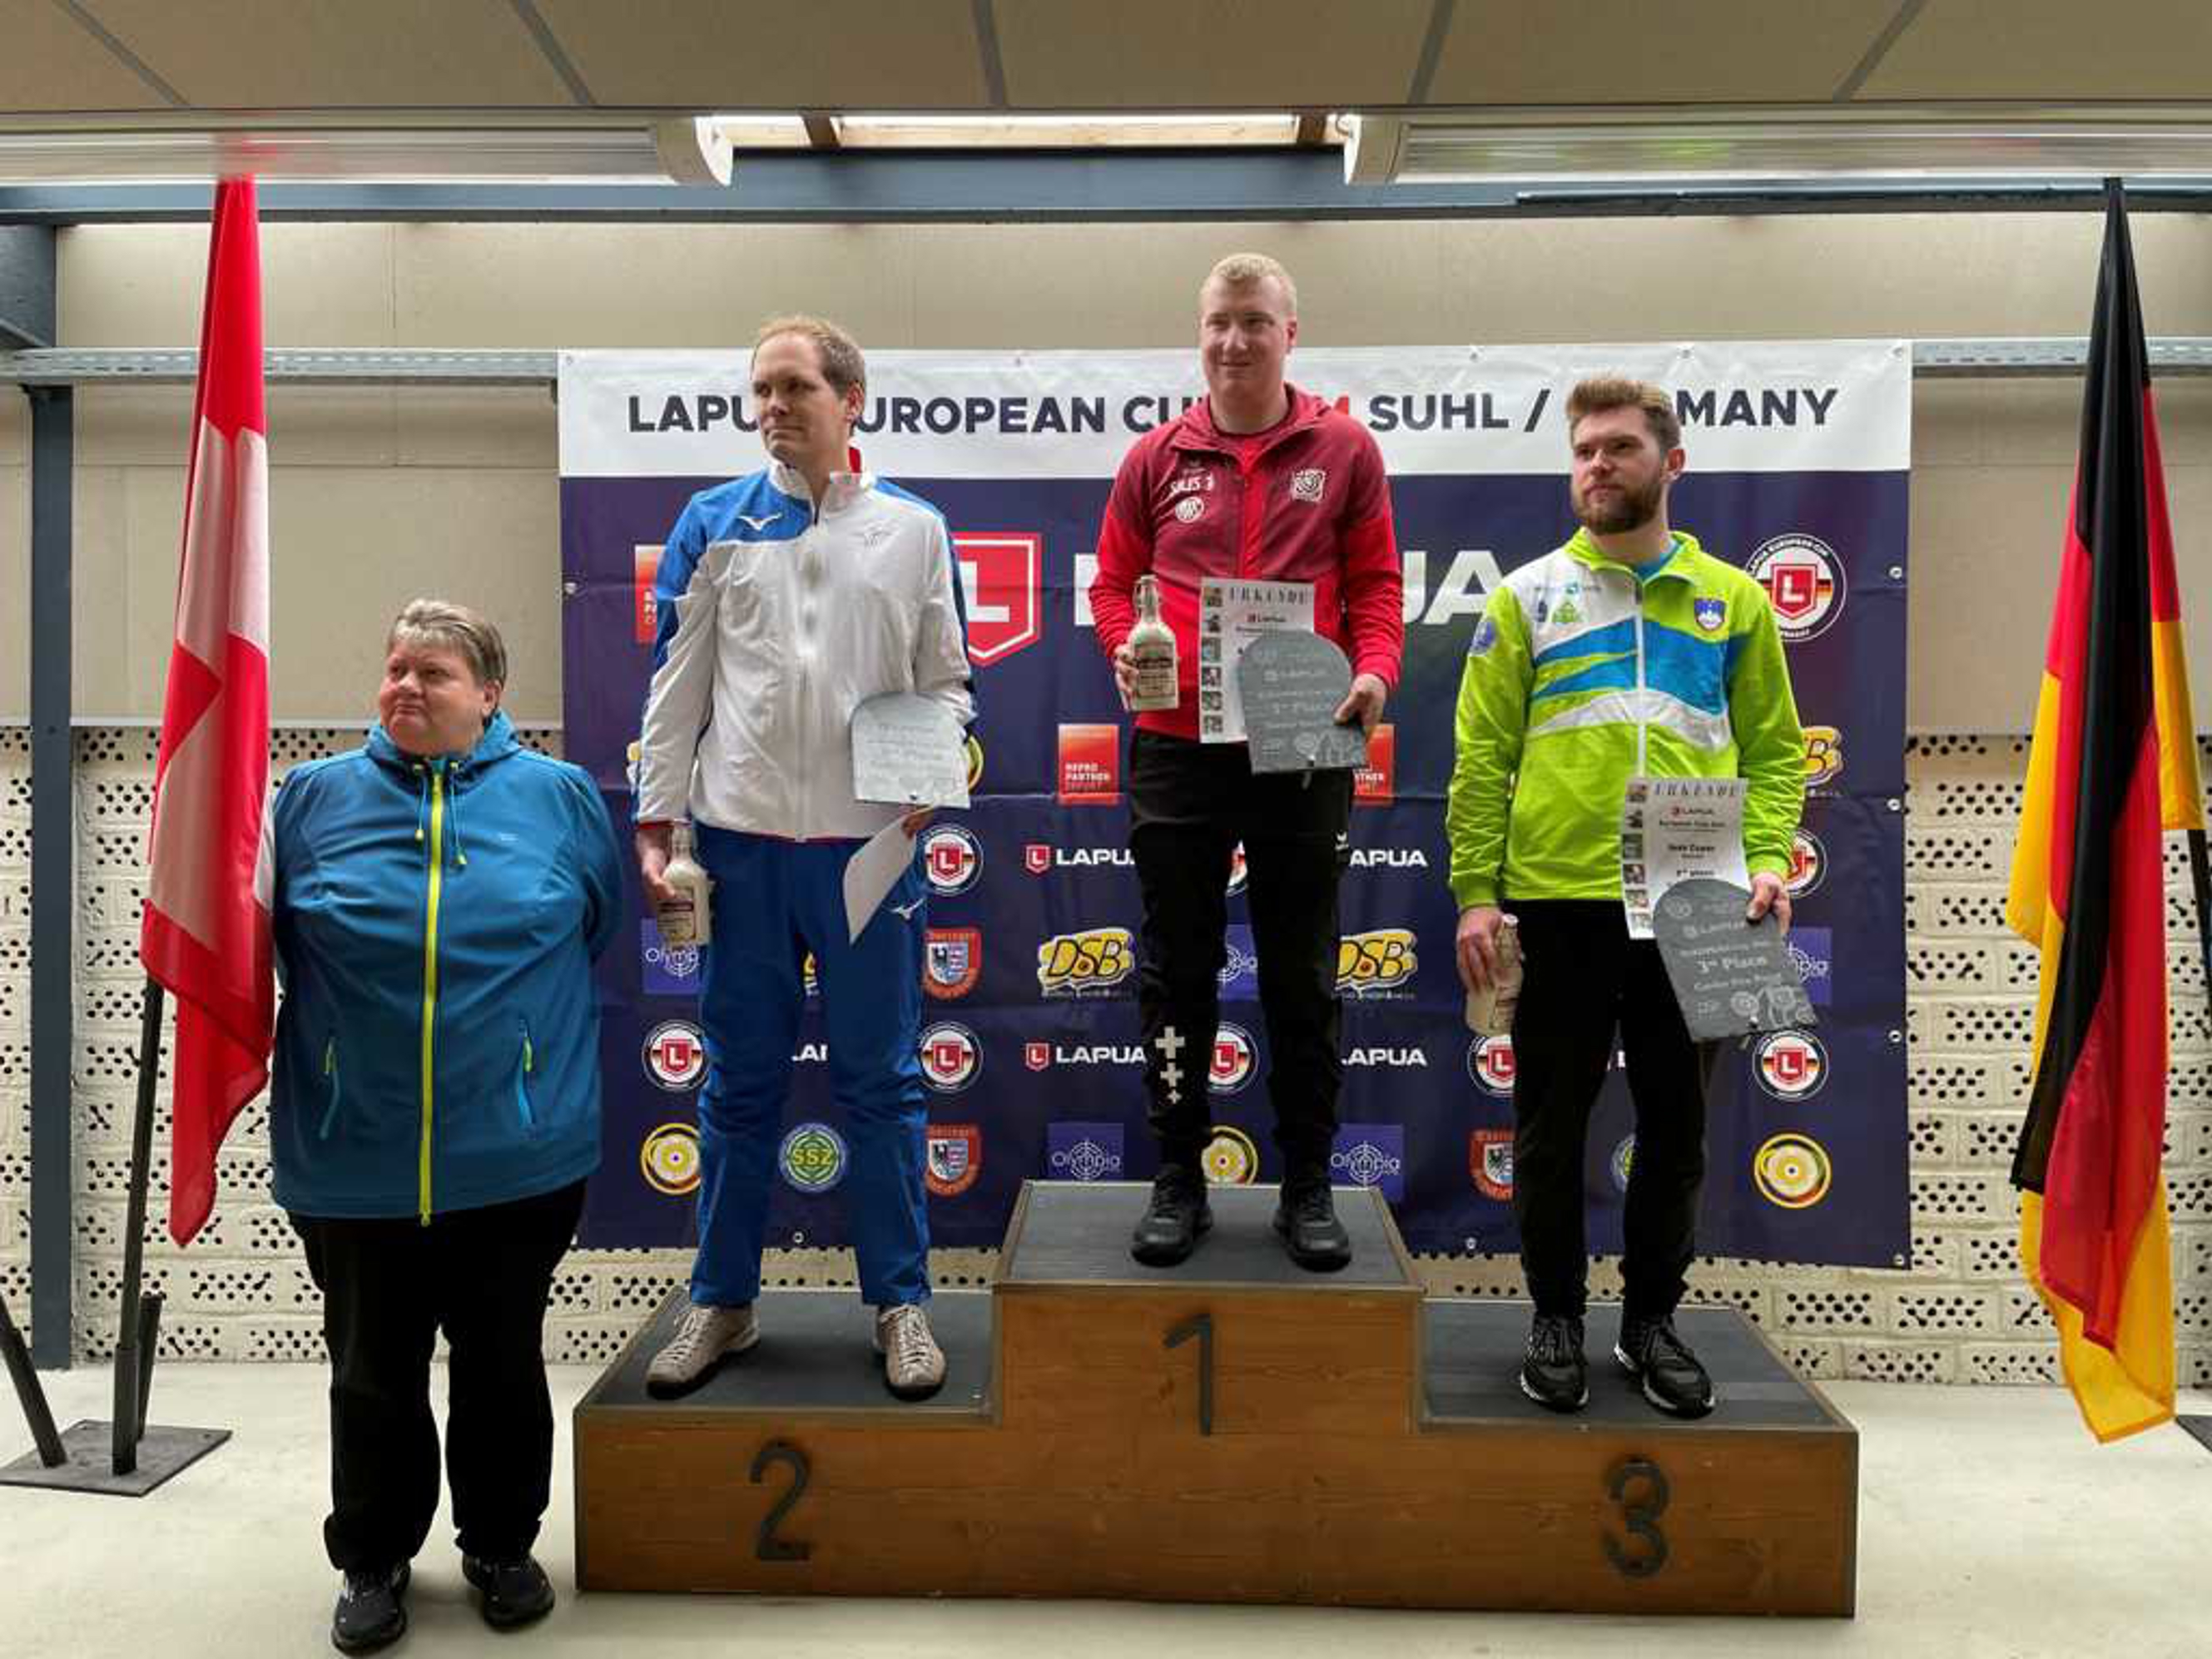 Adrian Schaub gewinnt am Europacup in Suhl (GER) mit der Zentralfeuerpistole vor Kévin Chapon (FRA) und Joze Ceper (SLO)